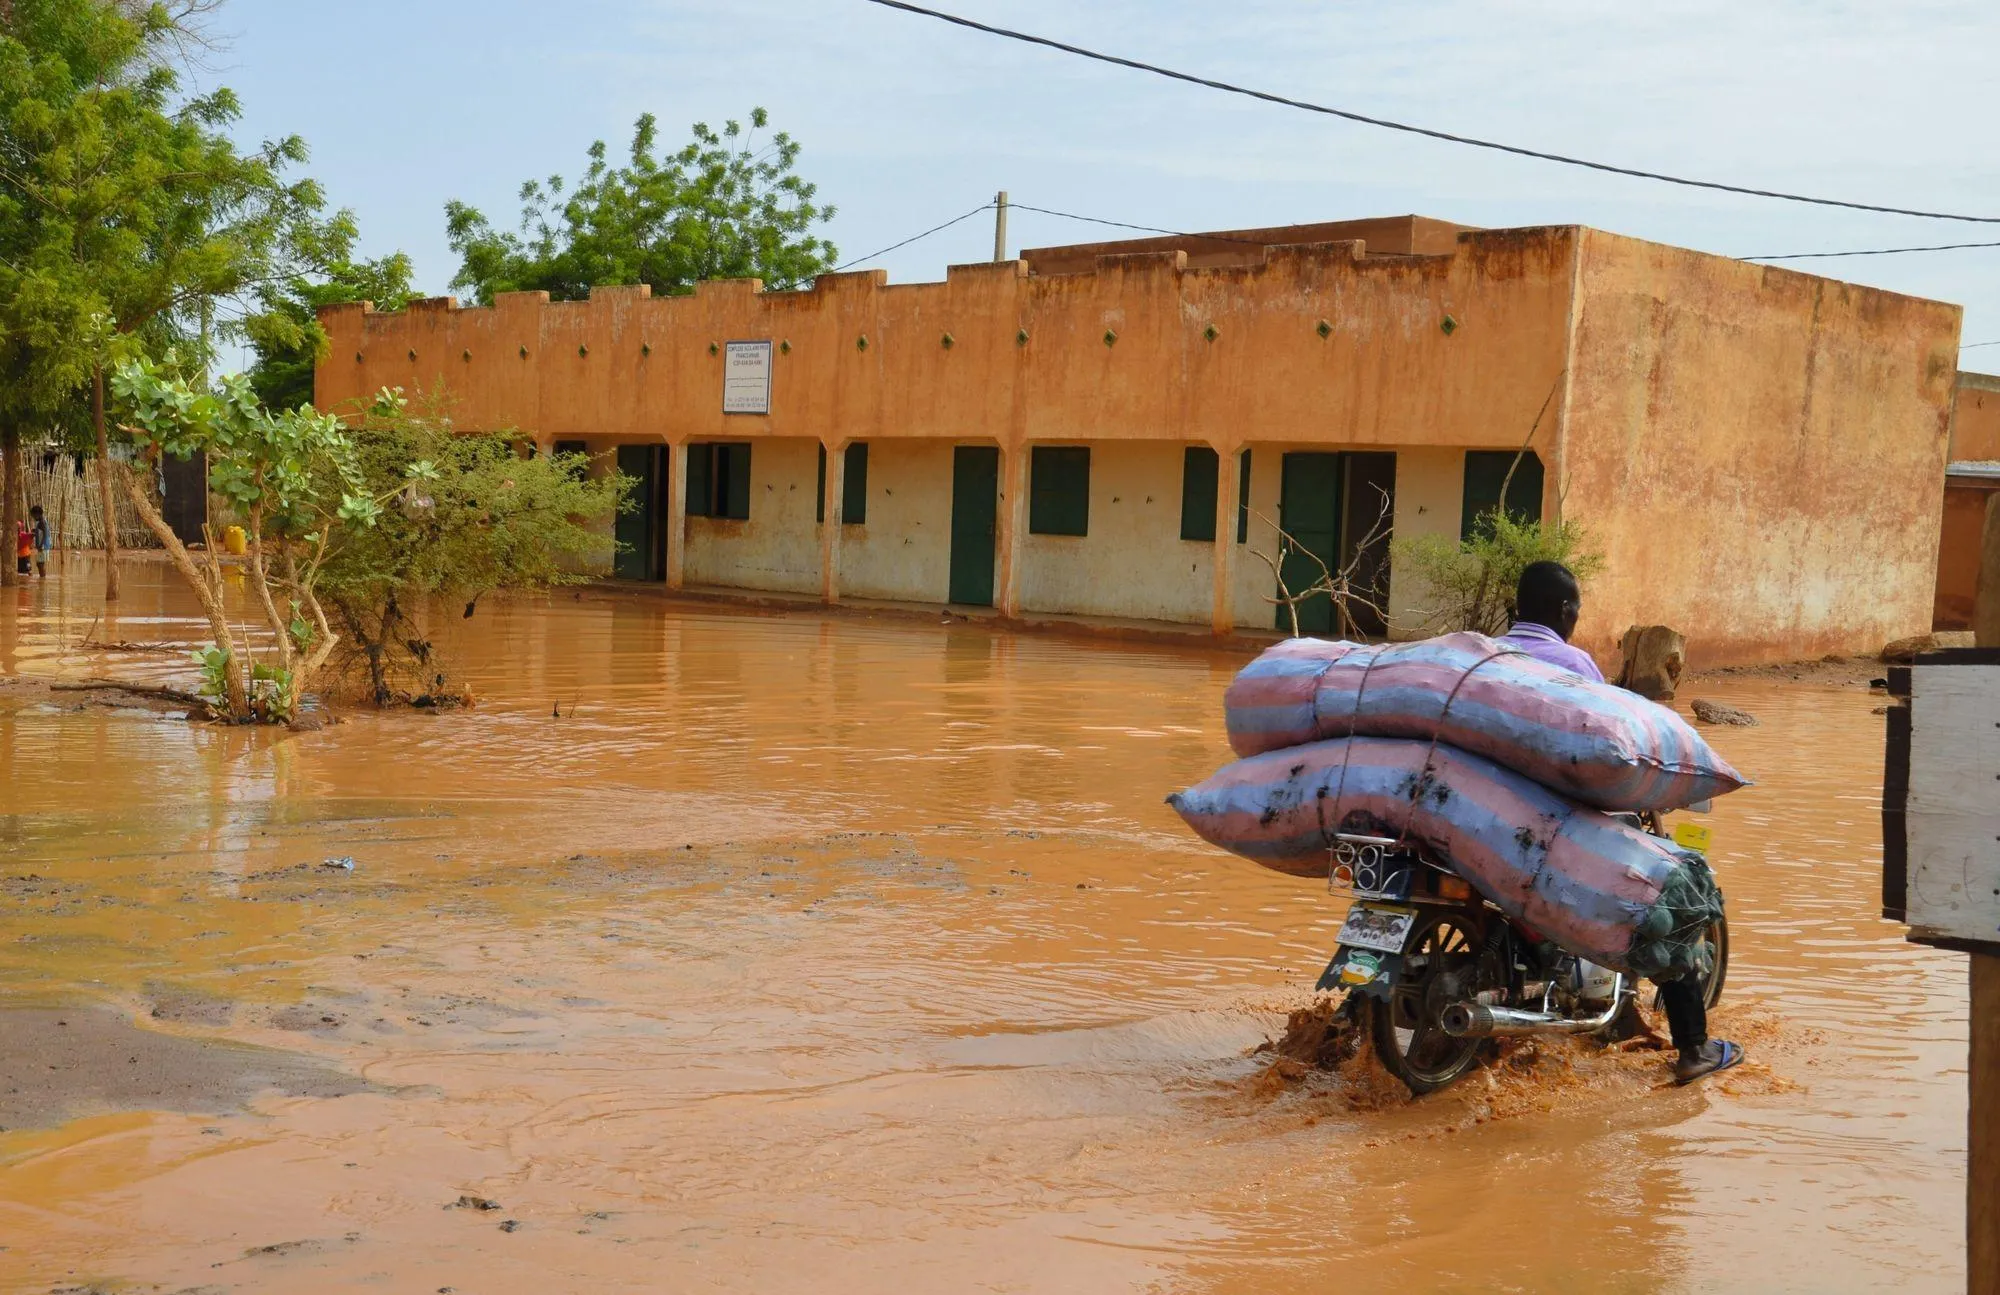 La capitale du Niger, située au bord d'un des plus grands fleuves d'Afrique, est régulièrement inondée